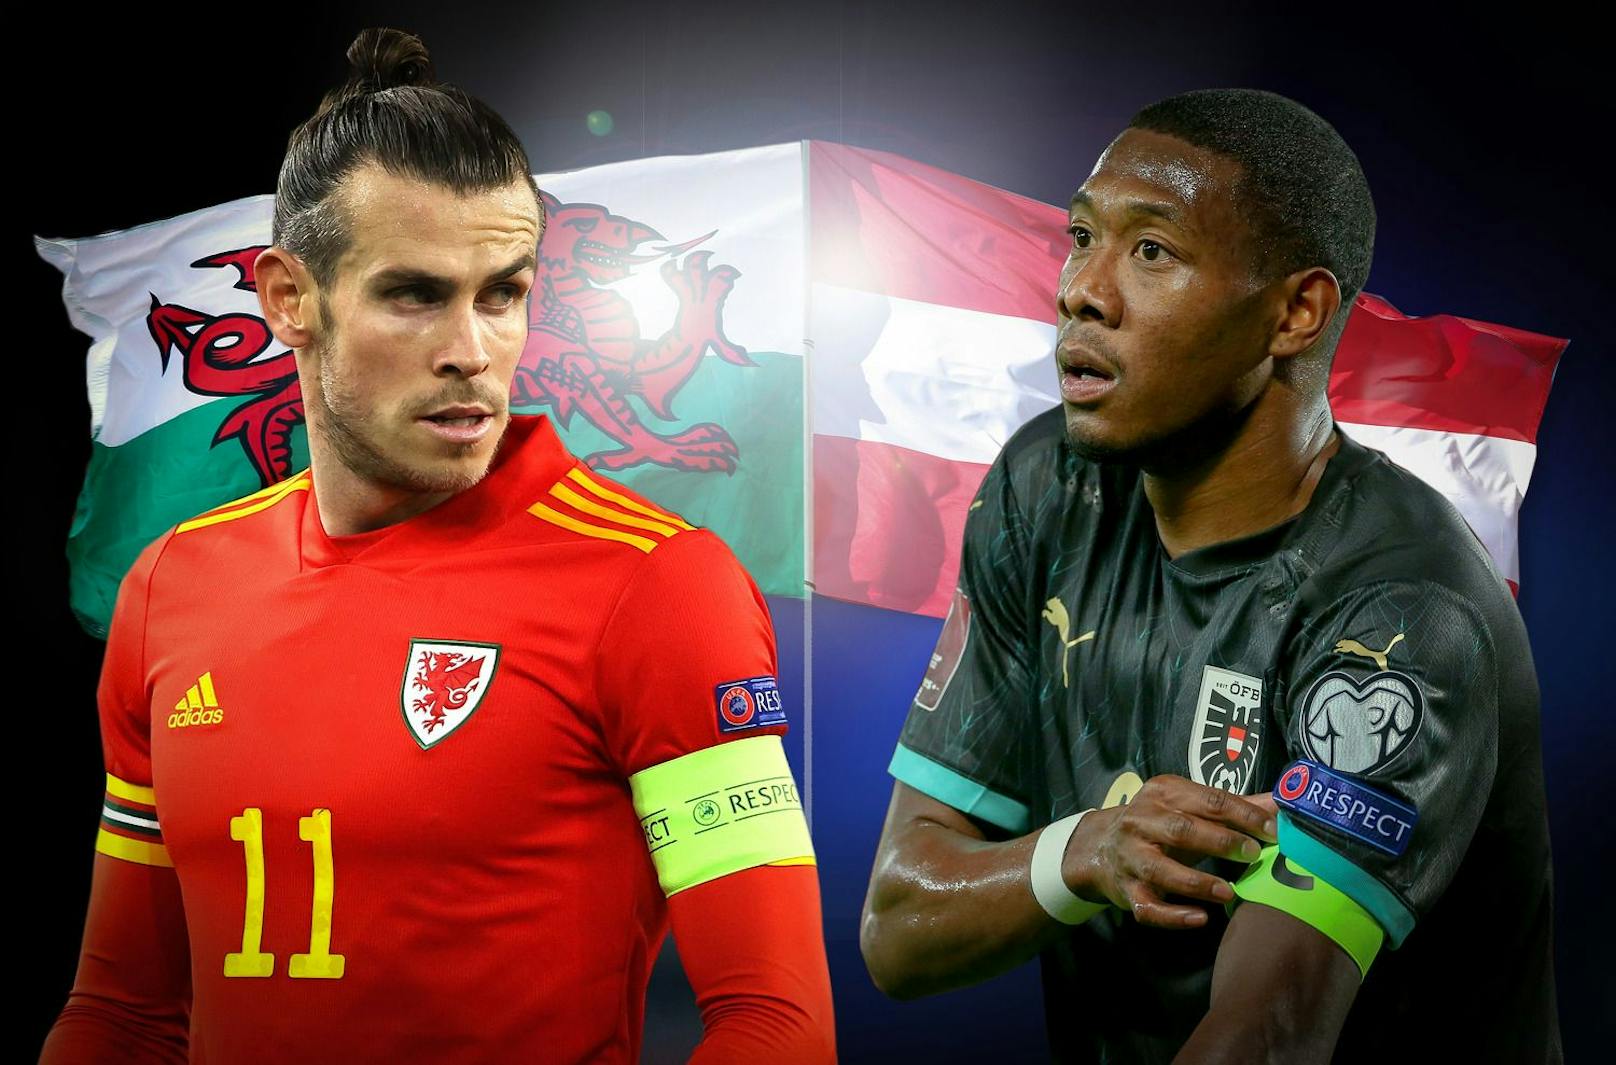 Gareth Bale gegen David Alaba – die Real-Stars kämpfen mit Wales und Österreich im WM-Play-off um den Aufstieg.